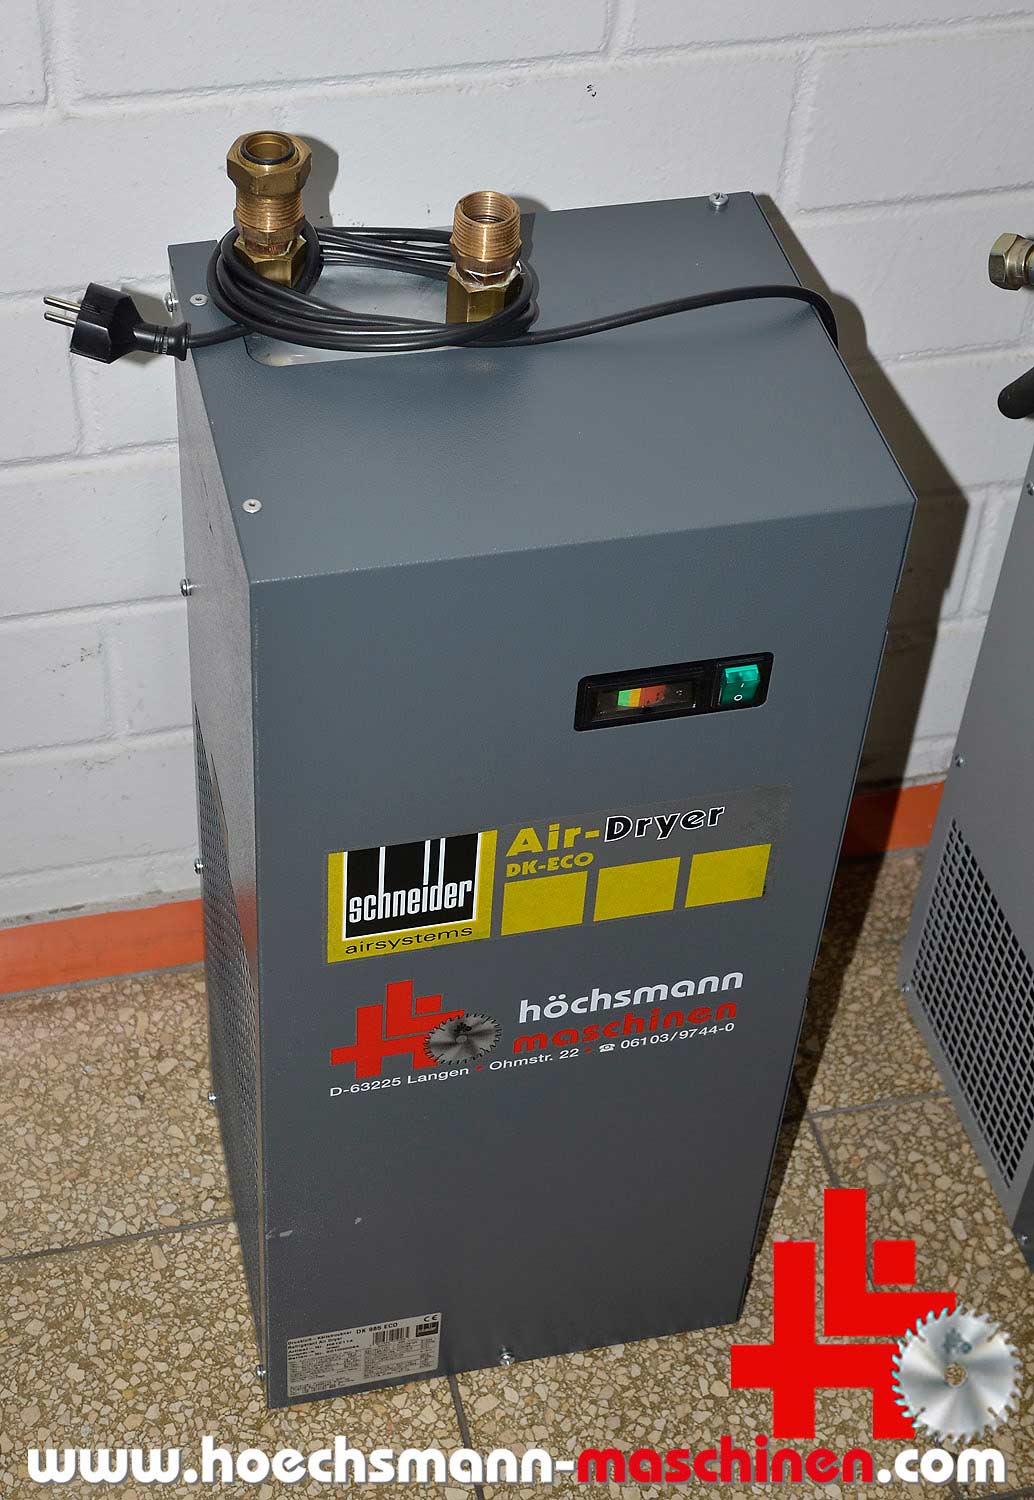 SCHNEIDER Kältetrockner Air-Dryer DK 985 ECO, Holzbearbeitungsmaschinen Hessen Höchsmann